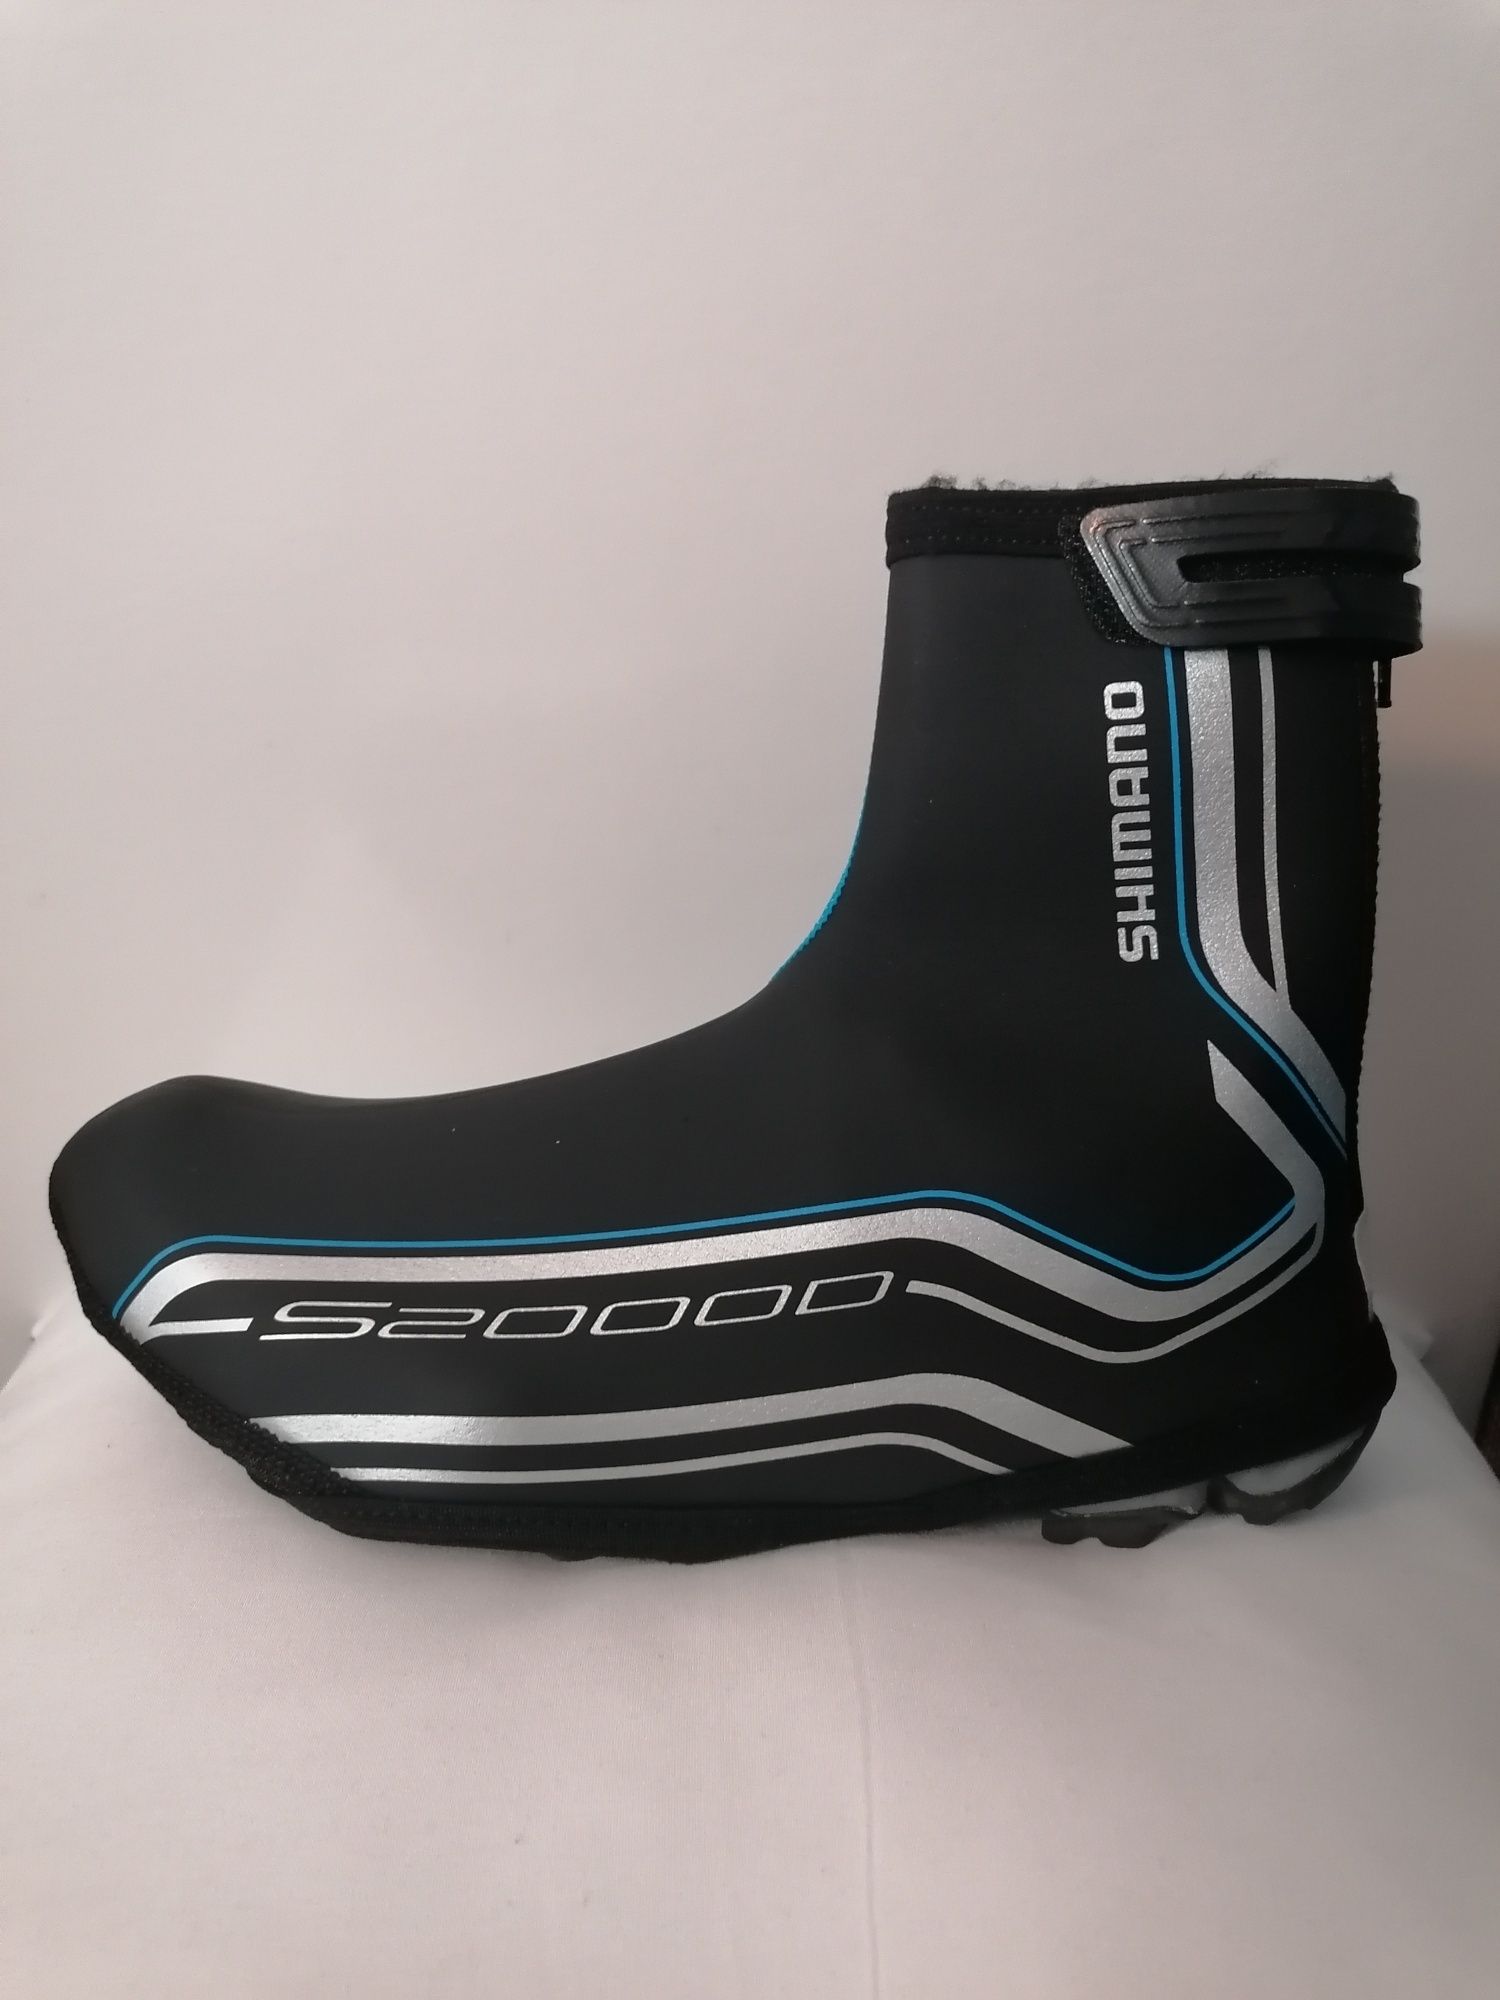 Capas Shimano S20000, para sapatos, tamanho M 40-42de ciclismo